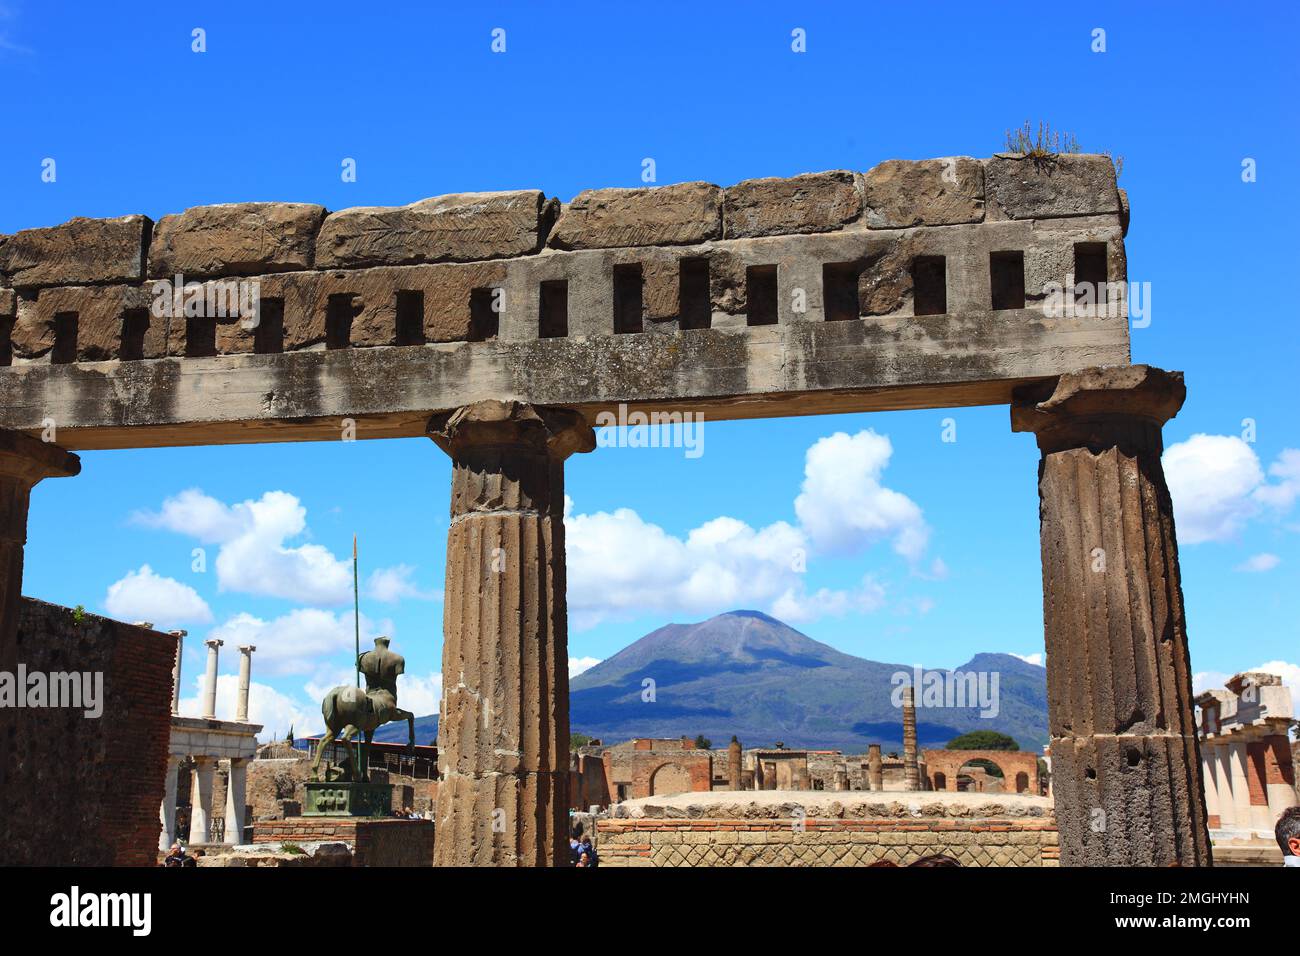 Das Forum, Pompeji, Antike Stadt in Kampanien am Golf von Neapel, beim Ausbruch des Vesuvs im Jahr 79 n. Chr. verschüttet, Italia Foto Stock